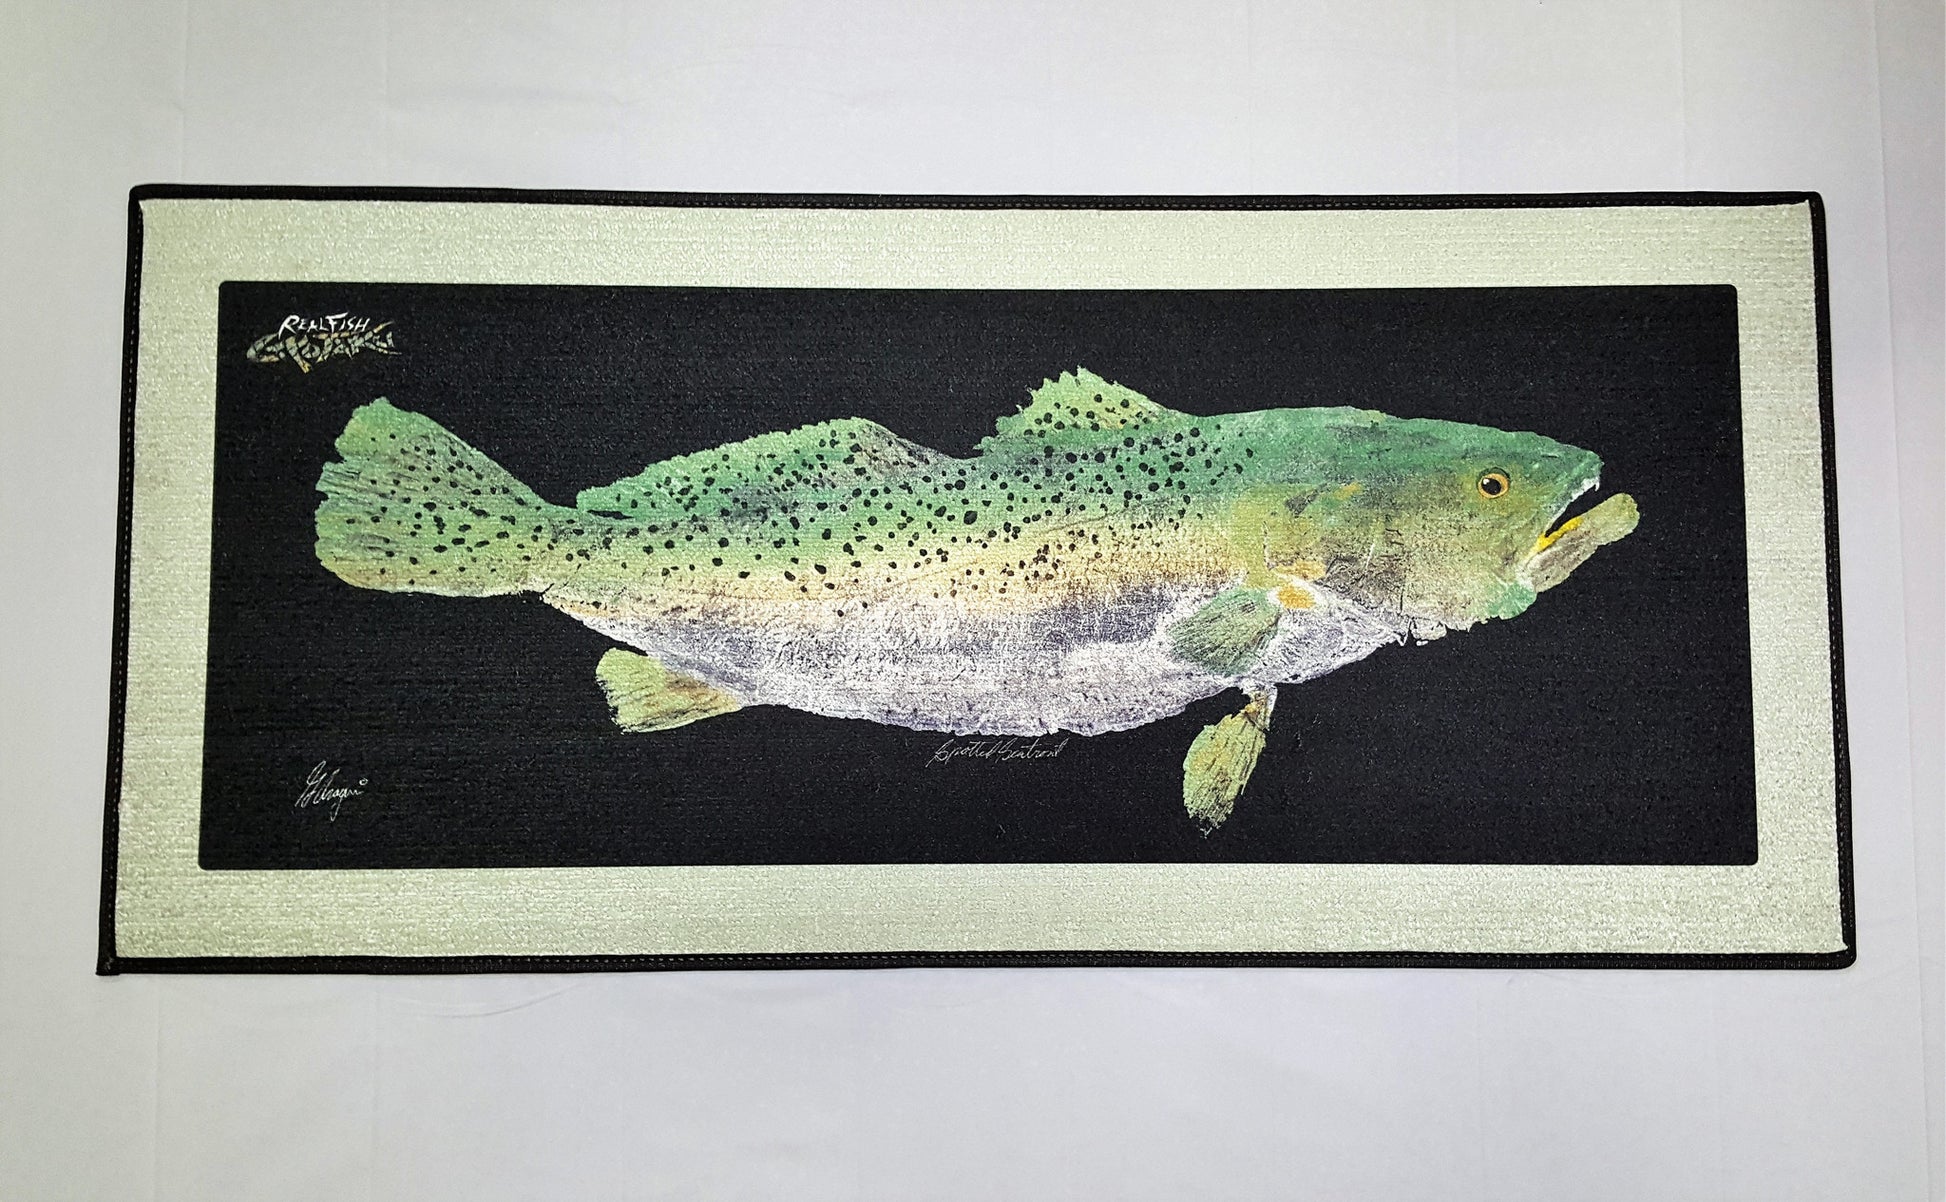 RealFish Gyotaku Floor Mats - Dogfish Tackle & Marine